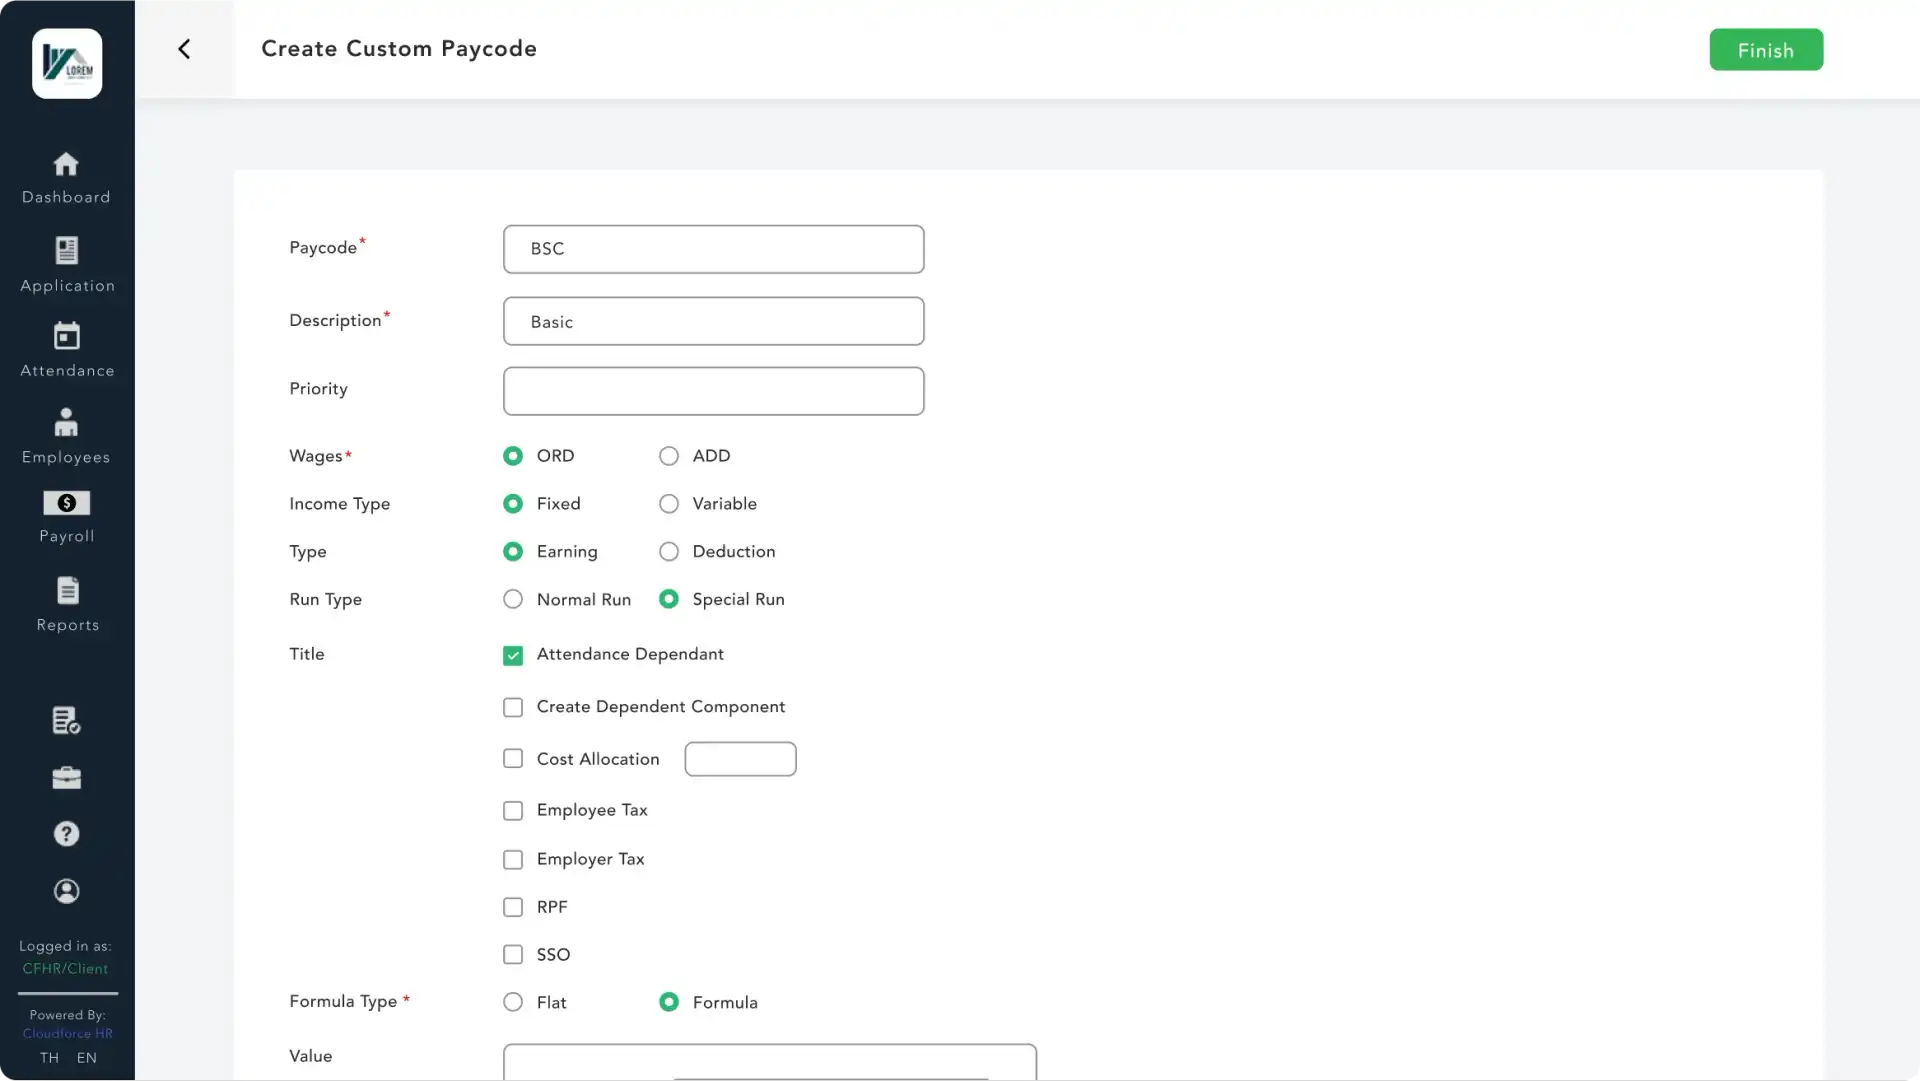 UI Screen to create custom paycode